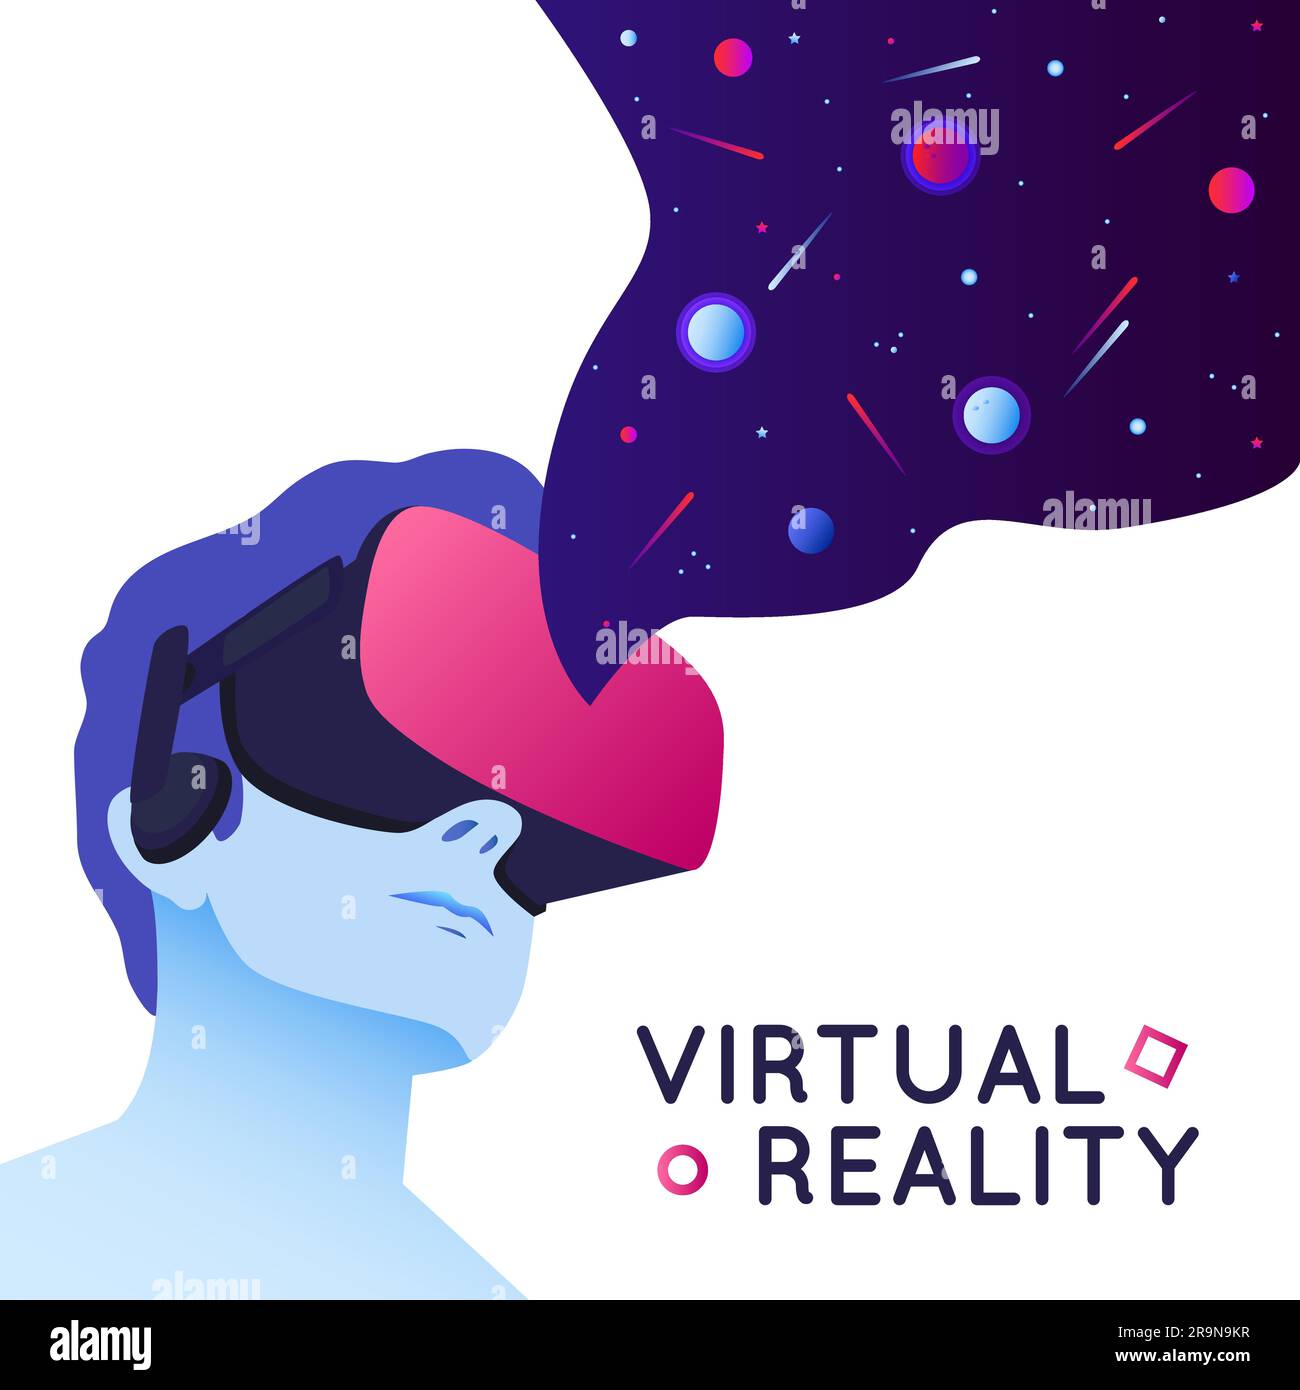 Illustration vectorielle d'un homme portant un casque de réalité virtuelle. Illustration VR moderne abstraite avec éléments spatiaux de style plat Illustration de Vecteur